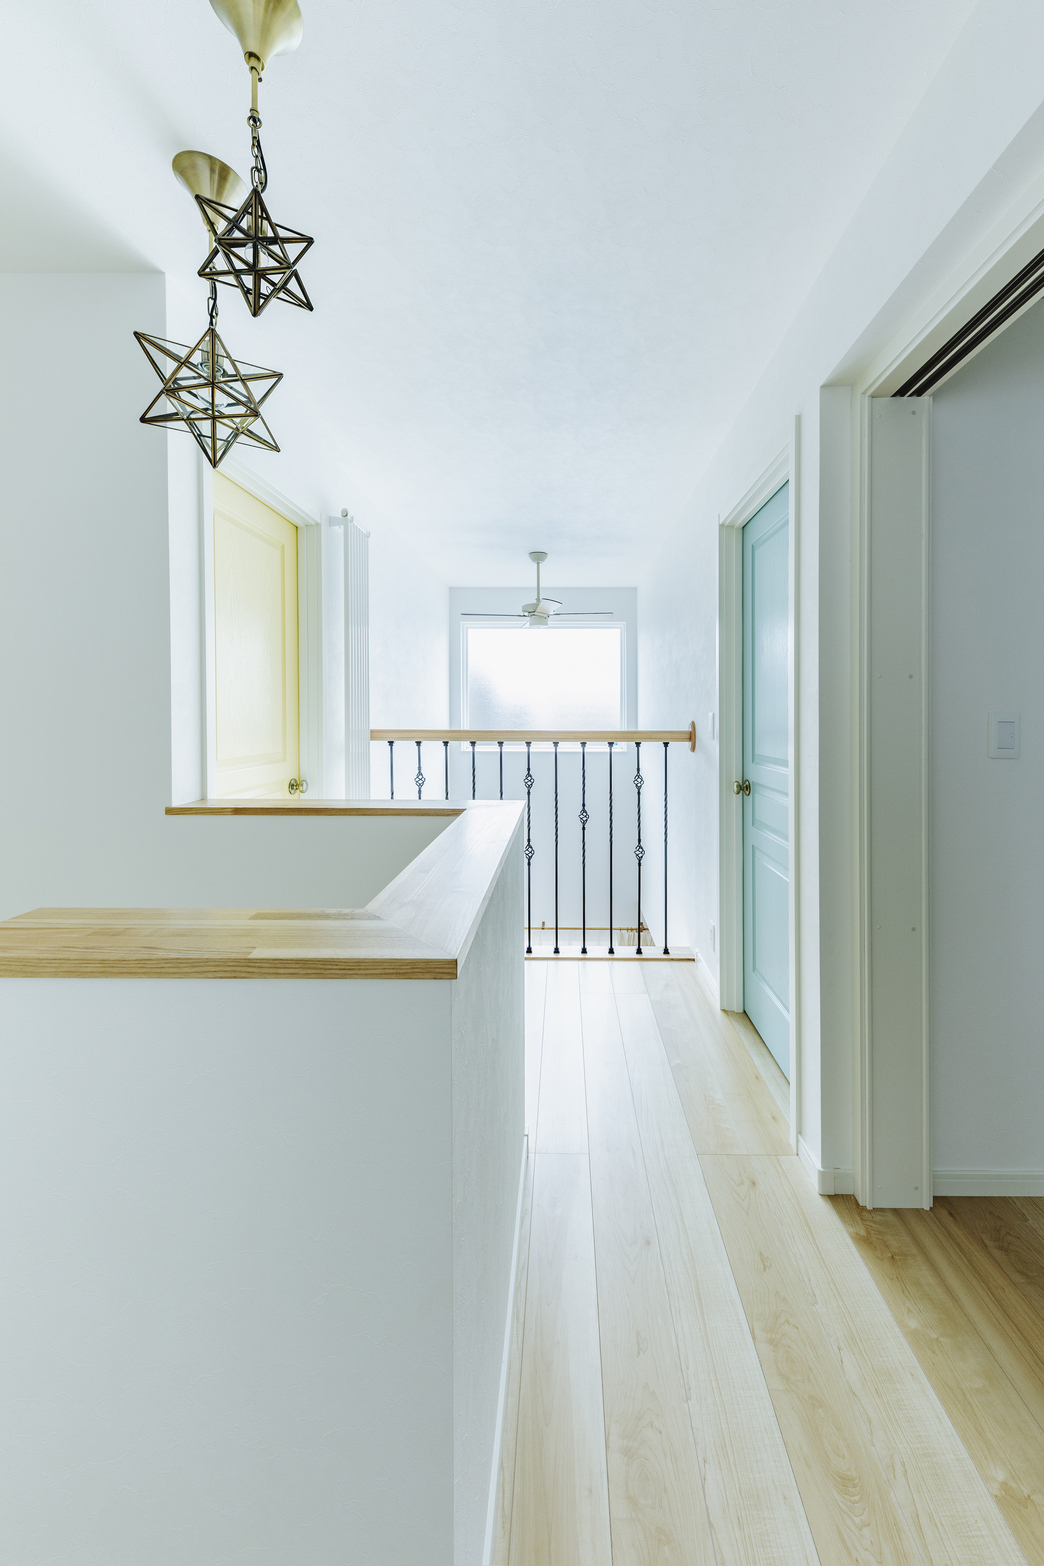 2階の居室ドアはそれぞれカラーが違って楽しい♪ホール部分の照明も人気です。